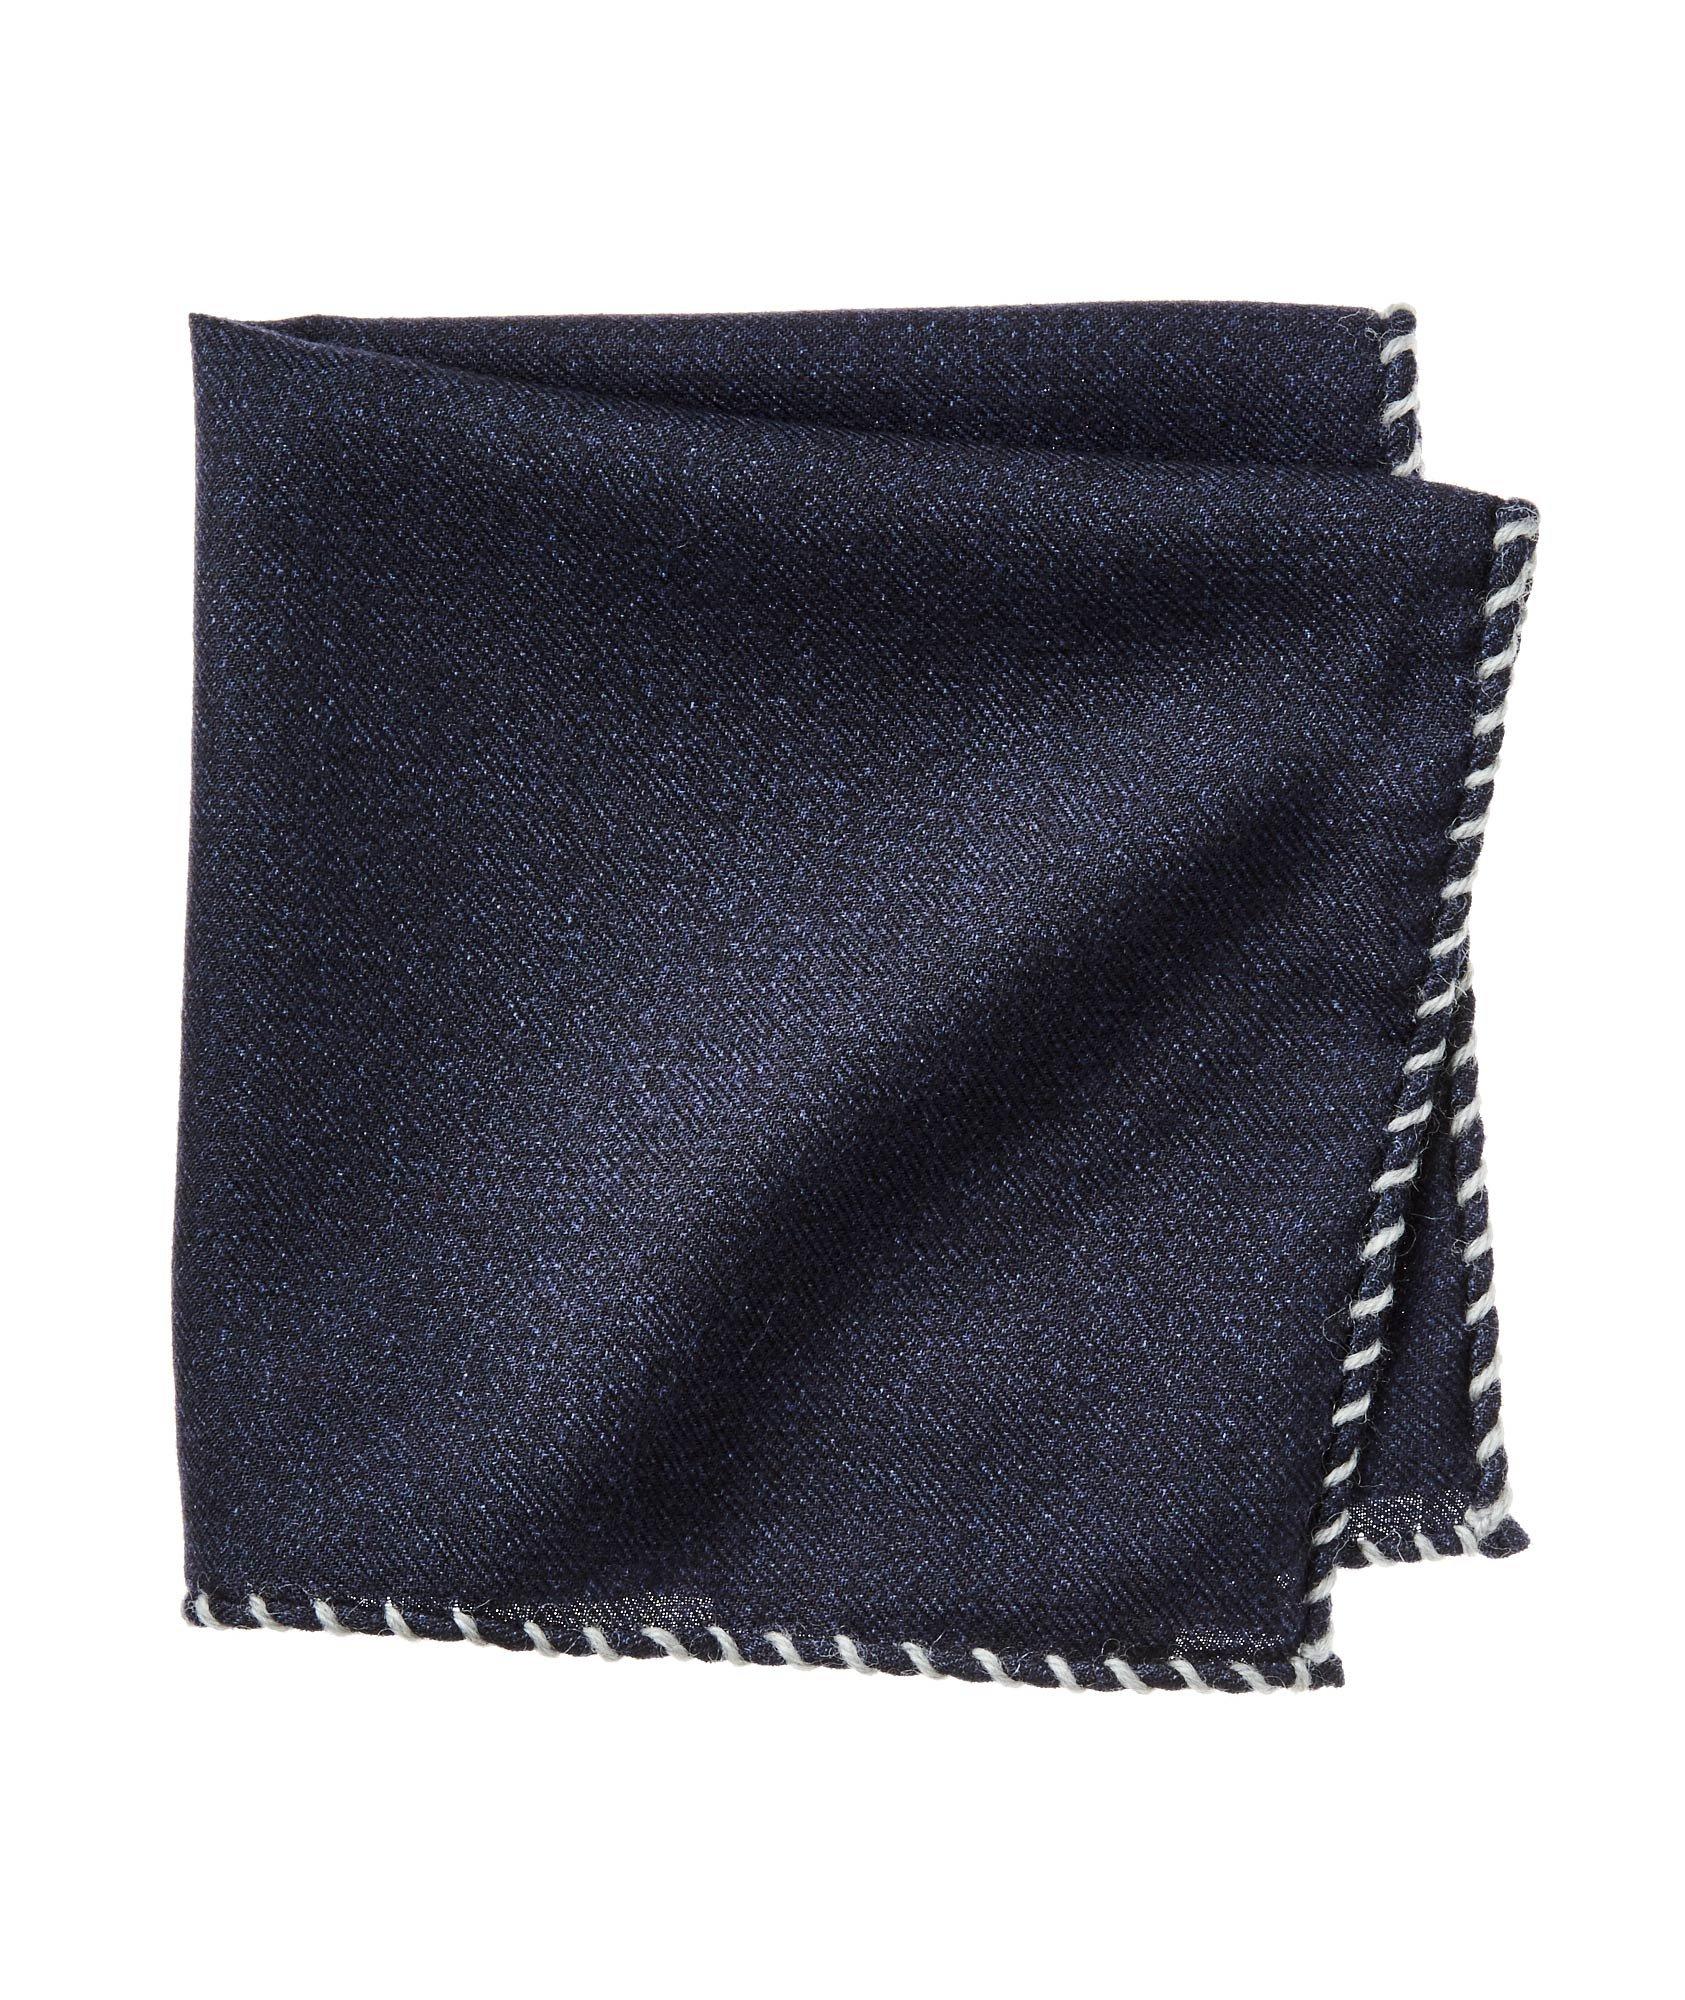 Wool Pocket Square image 0